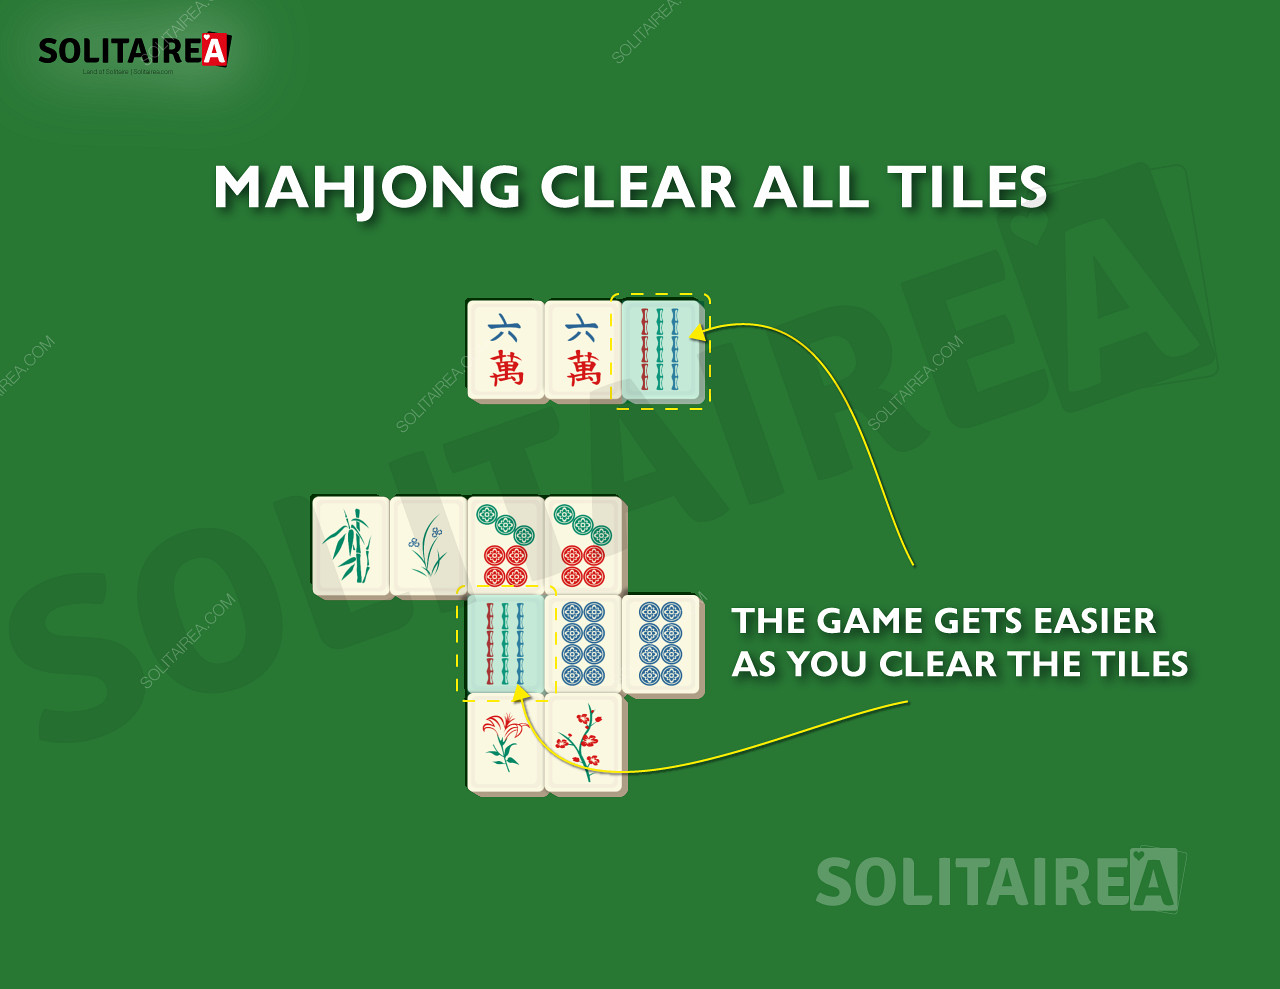 När du gör framsteg blir det färre brickor kvar att ta bort i Mahjong Solitaire.